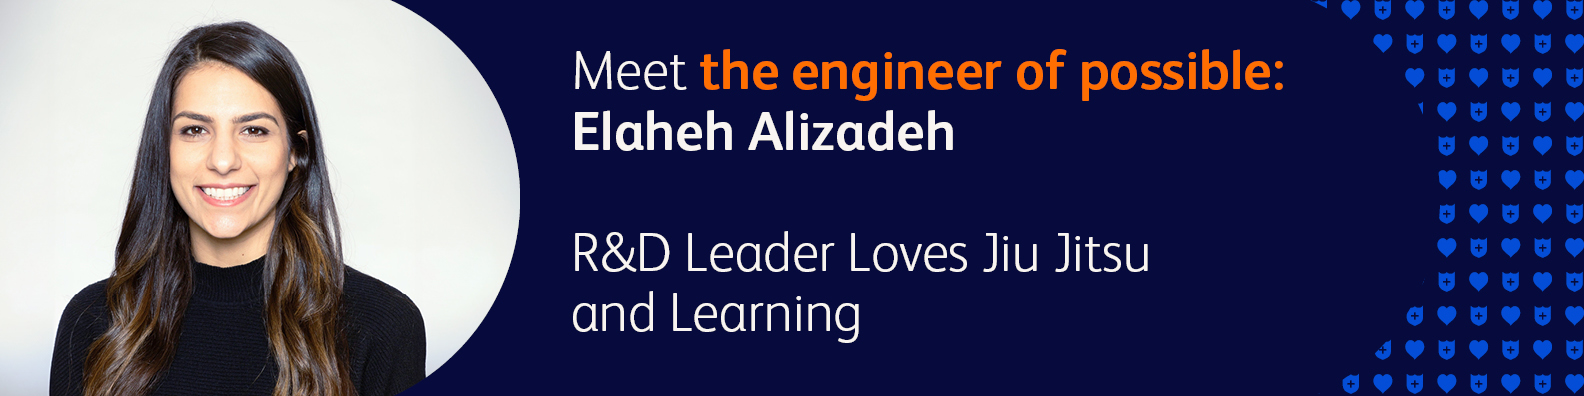 Quote from Elaheh Alizadeh, Associate Director, R&D at BD